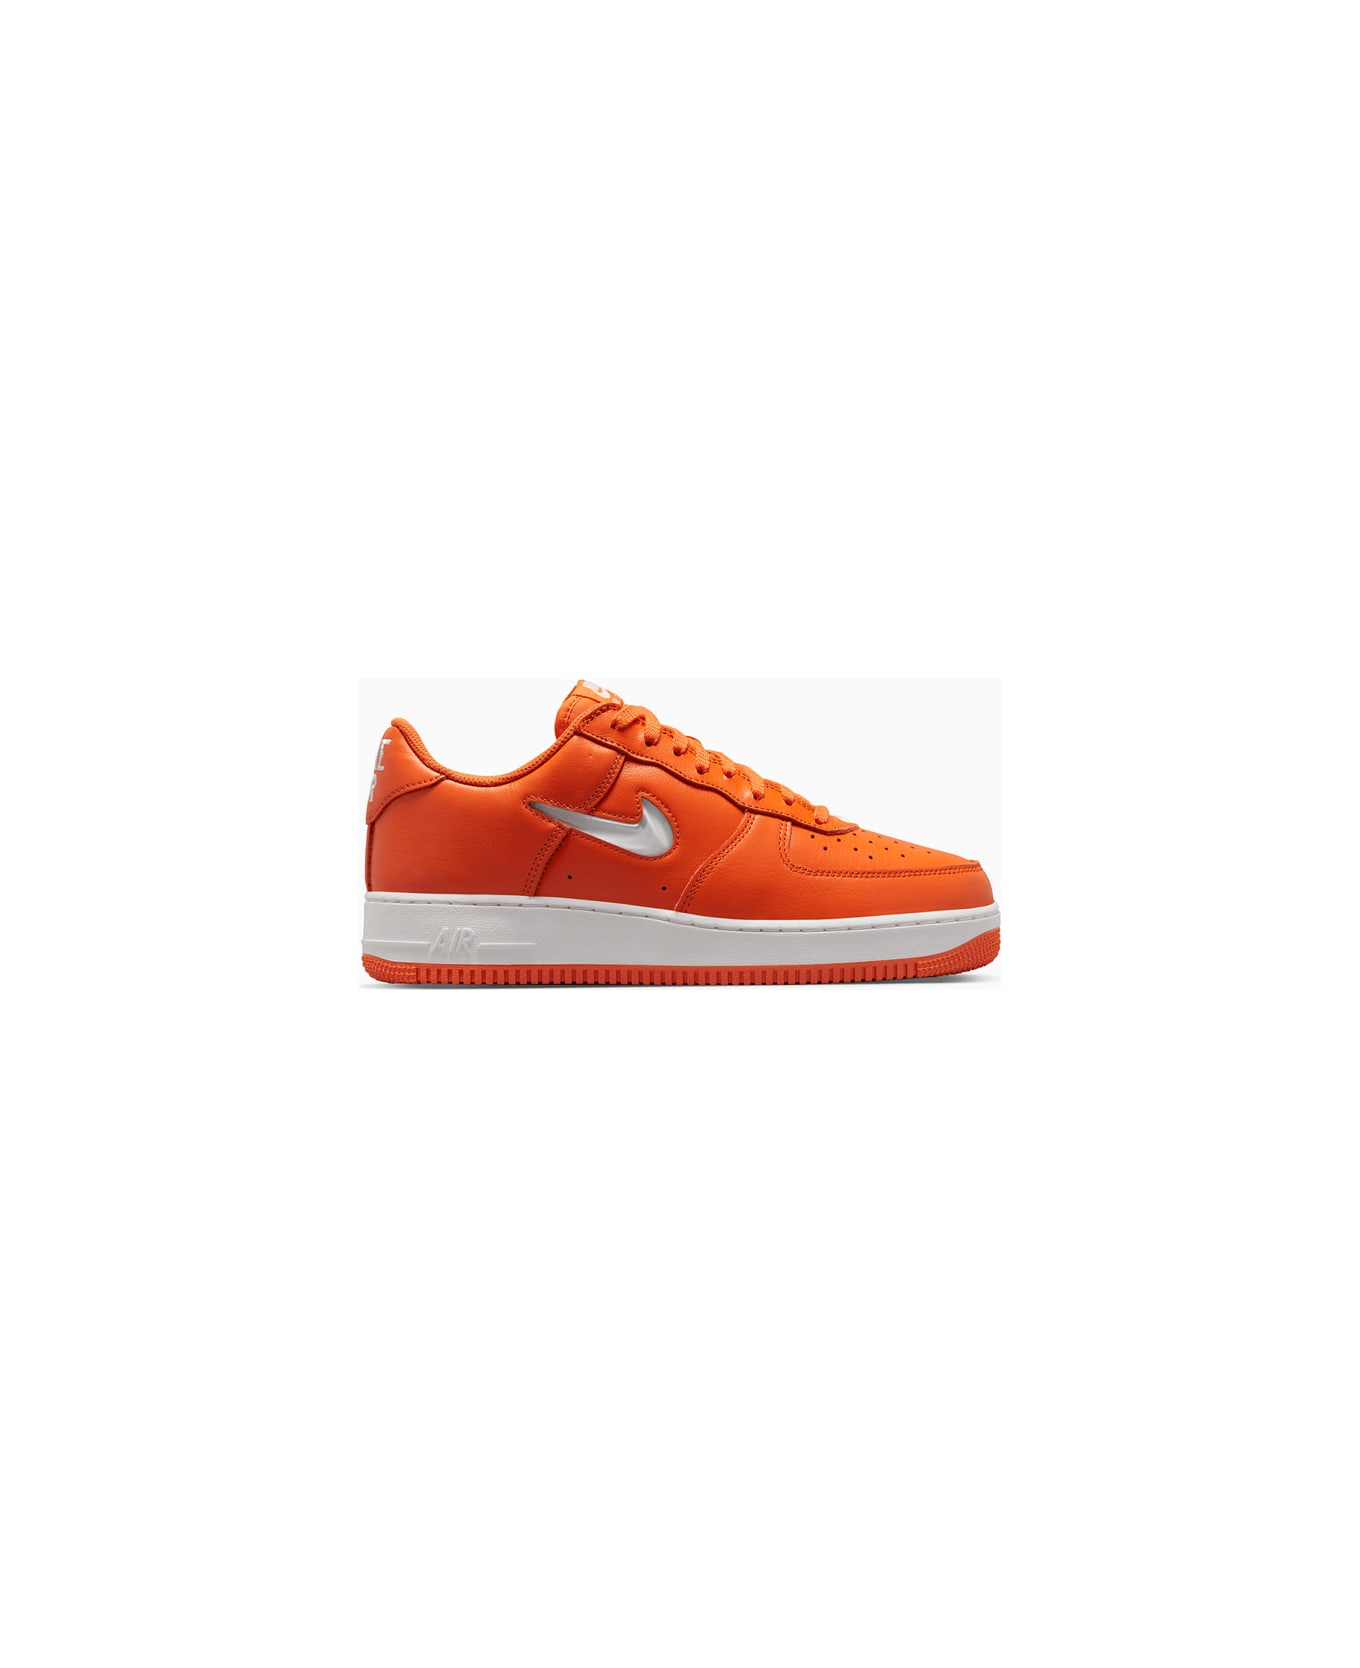 Nike Air Force 1 Low Retro Sneakers Fj1044-800 - Orange